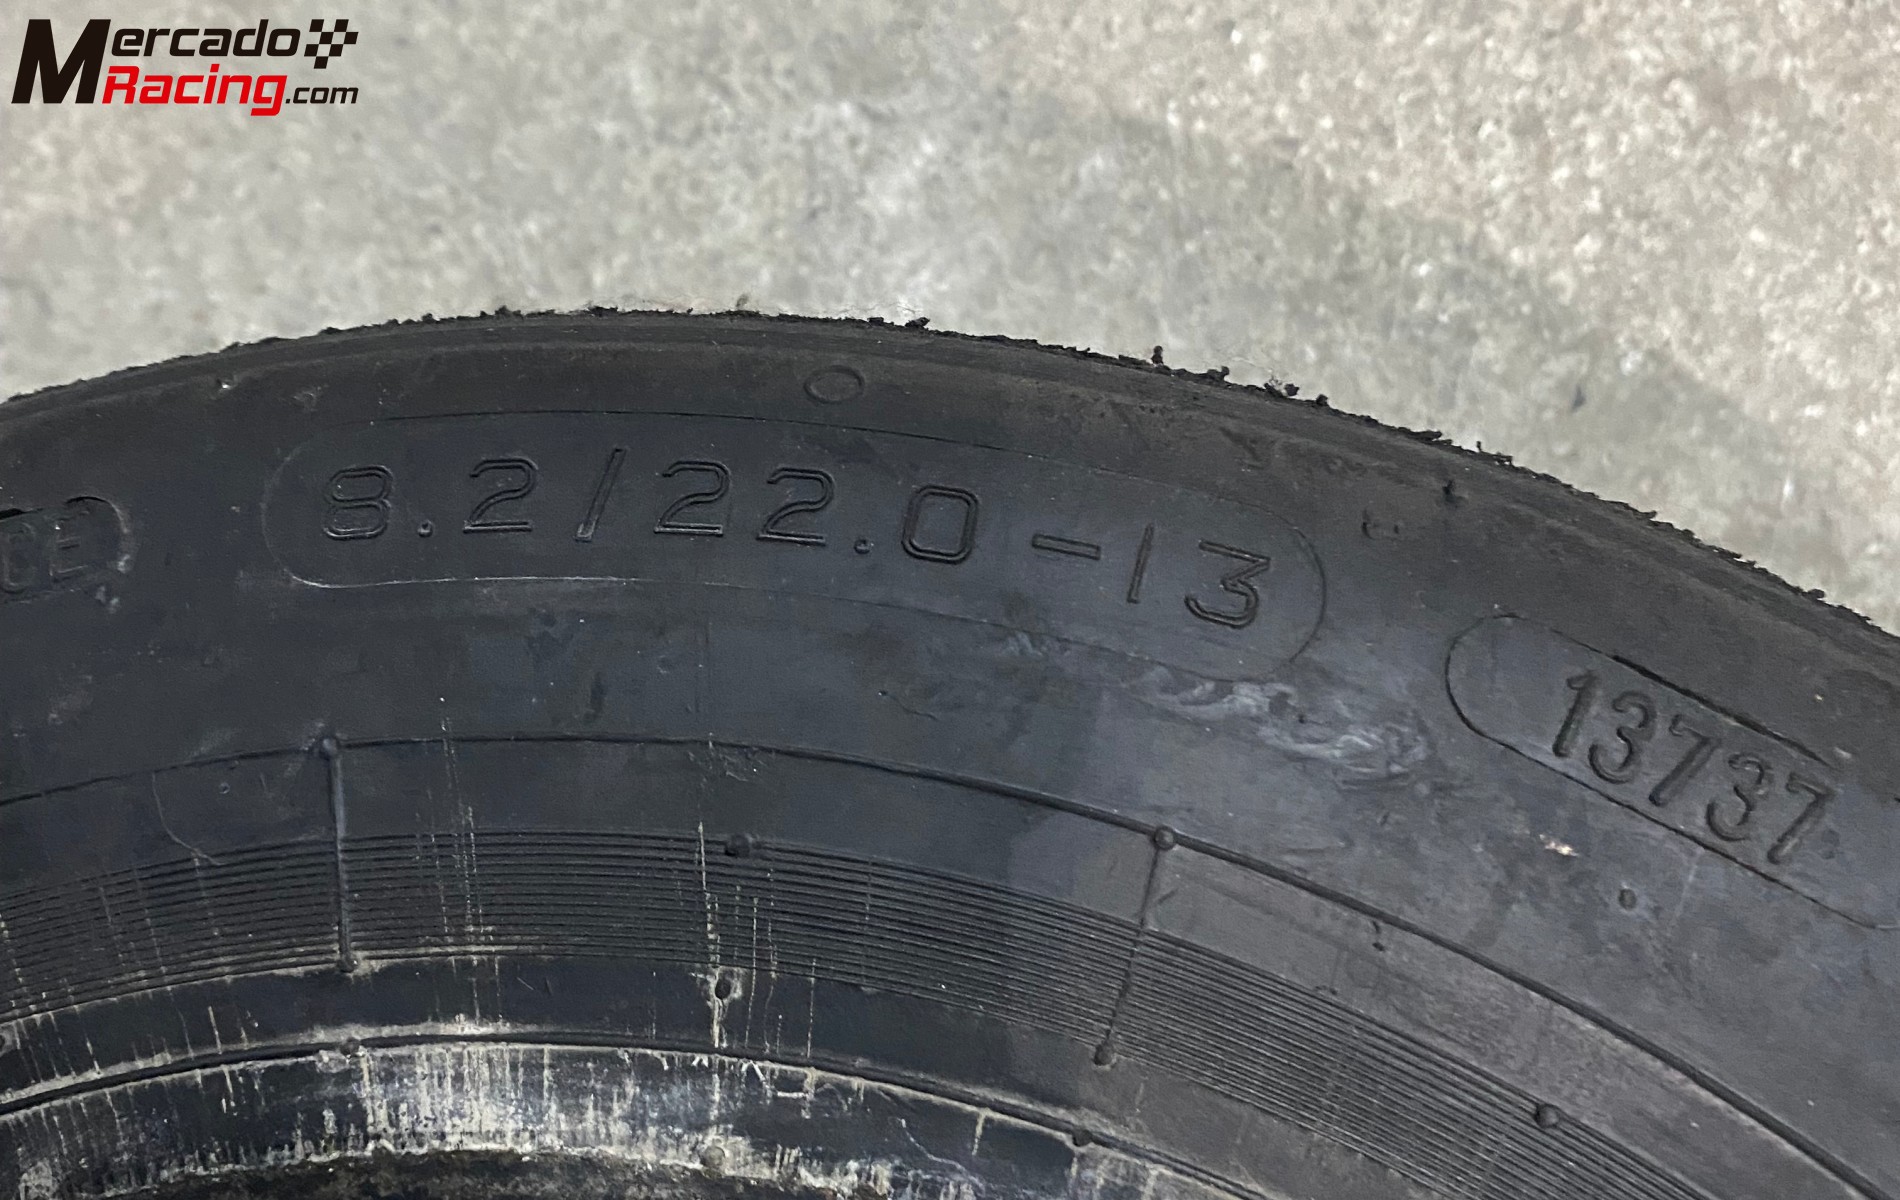 Neumáticos avon slick 13